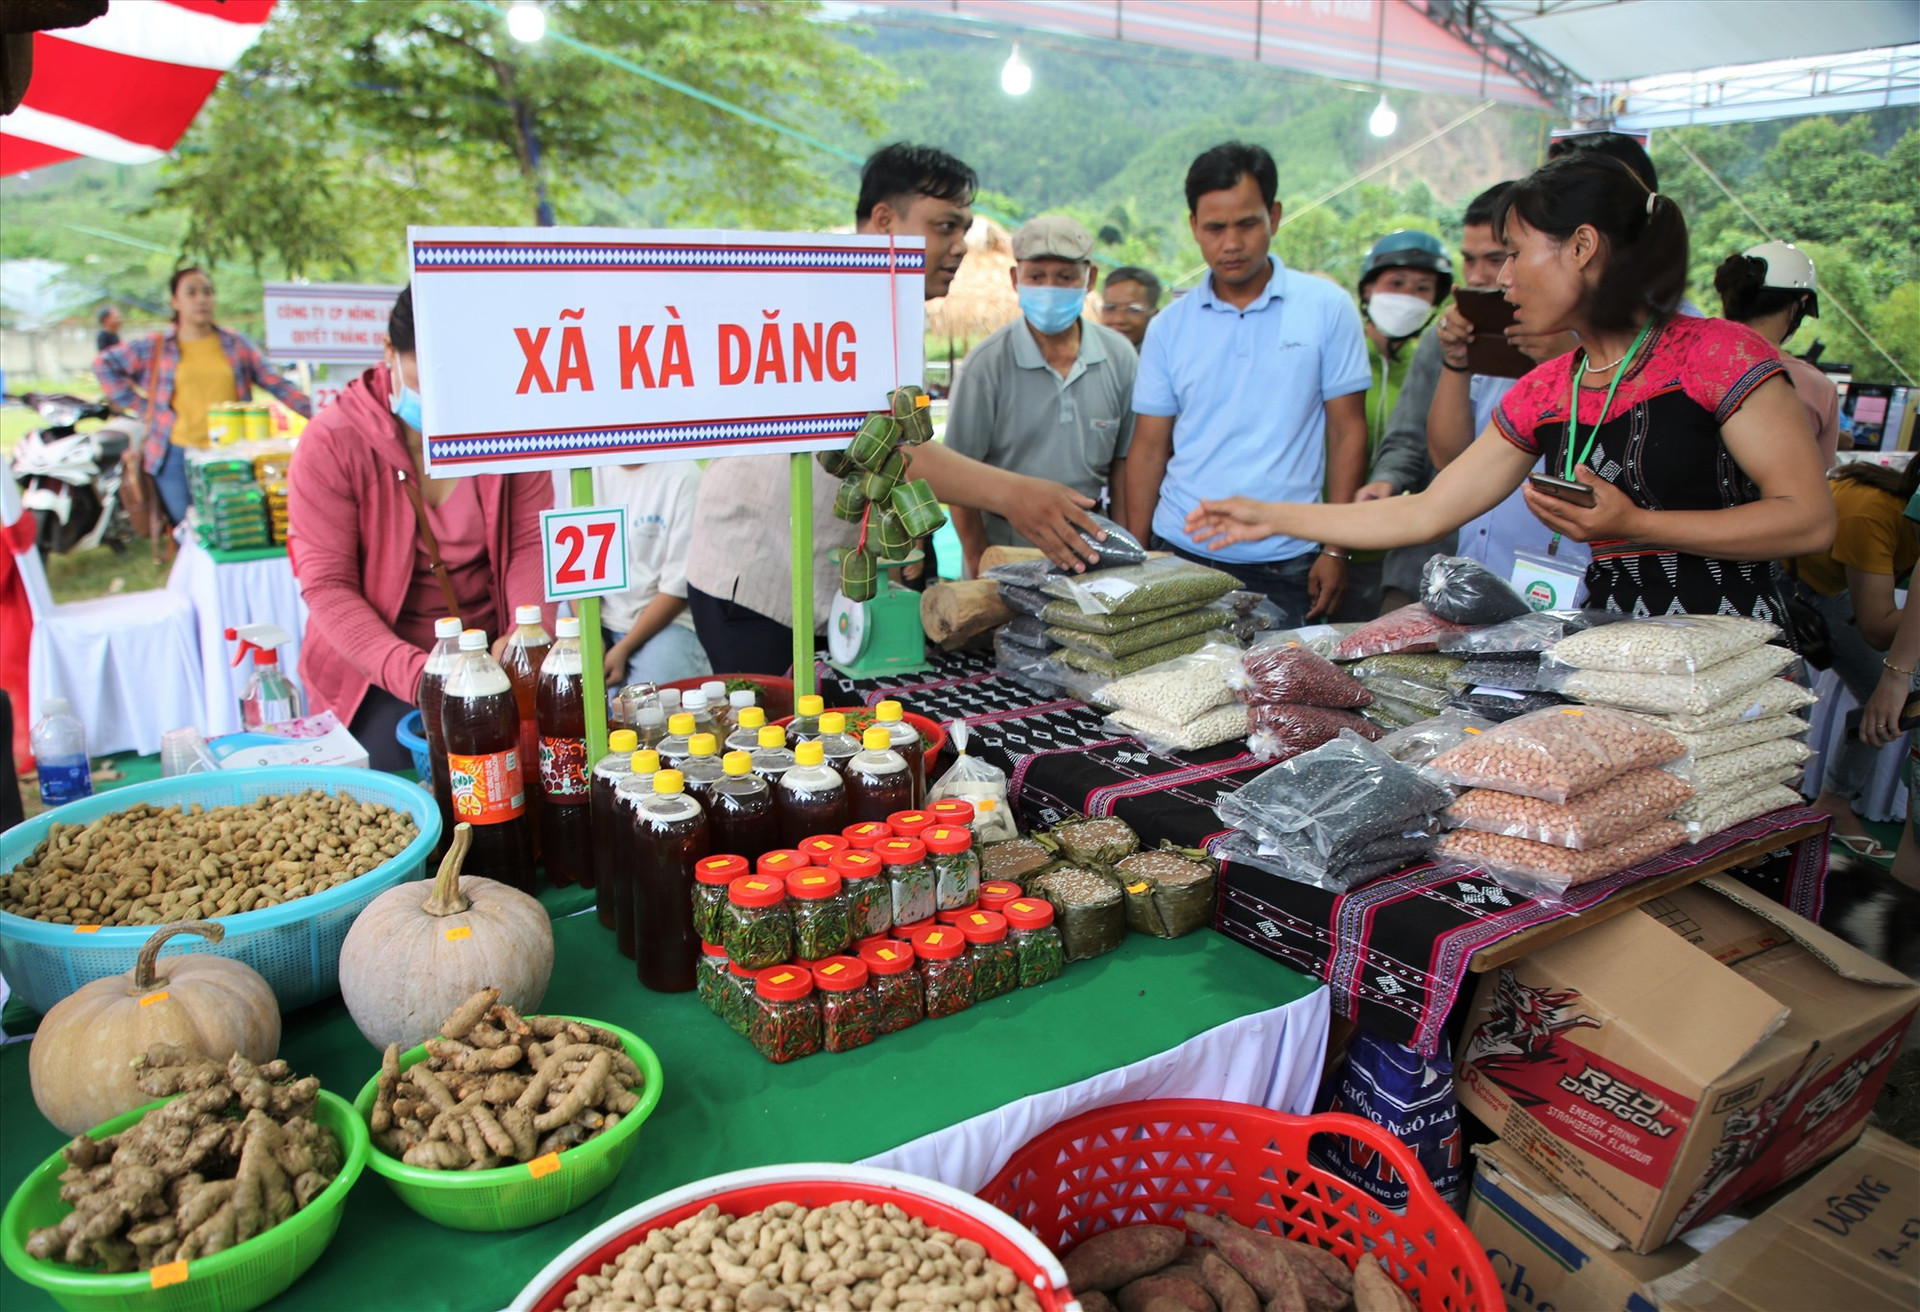 Nông sản được bày bán tại hội chợ miền núi phần lớn là sản phẩm khởi nghiệp của thanh niên địa phương. Ảnh: ALĂNG NGƯỚC